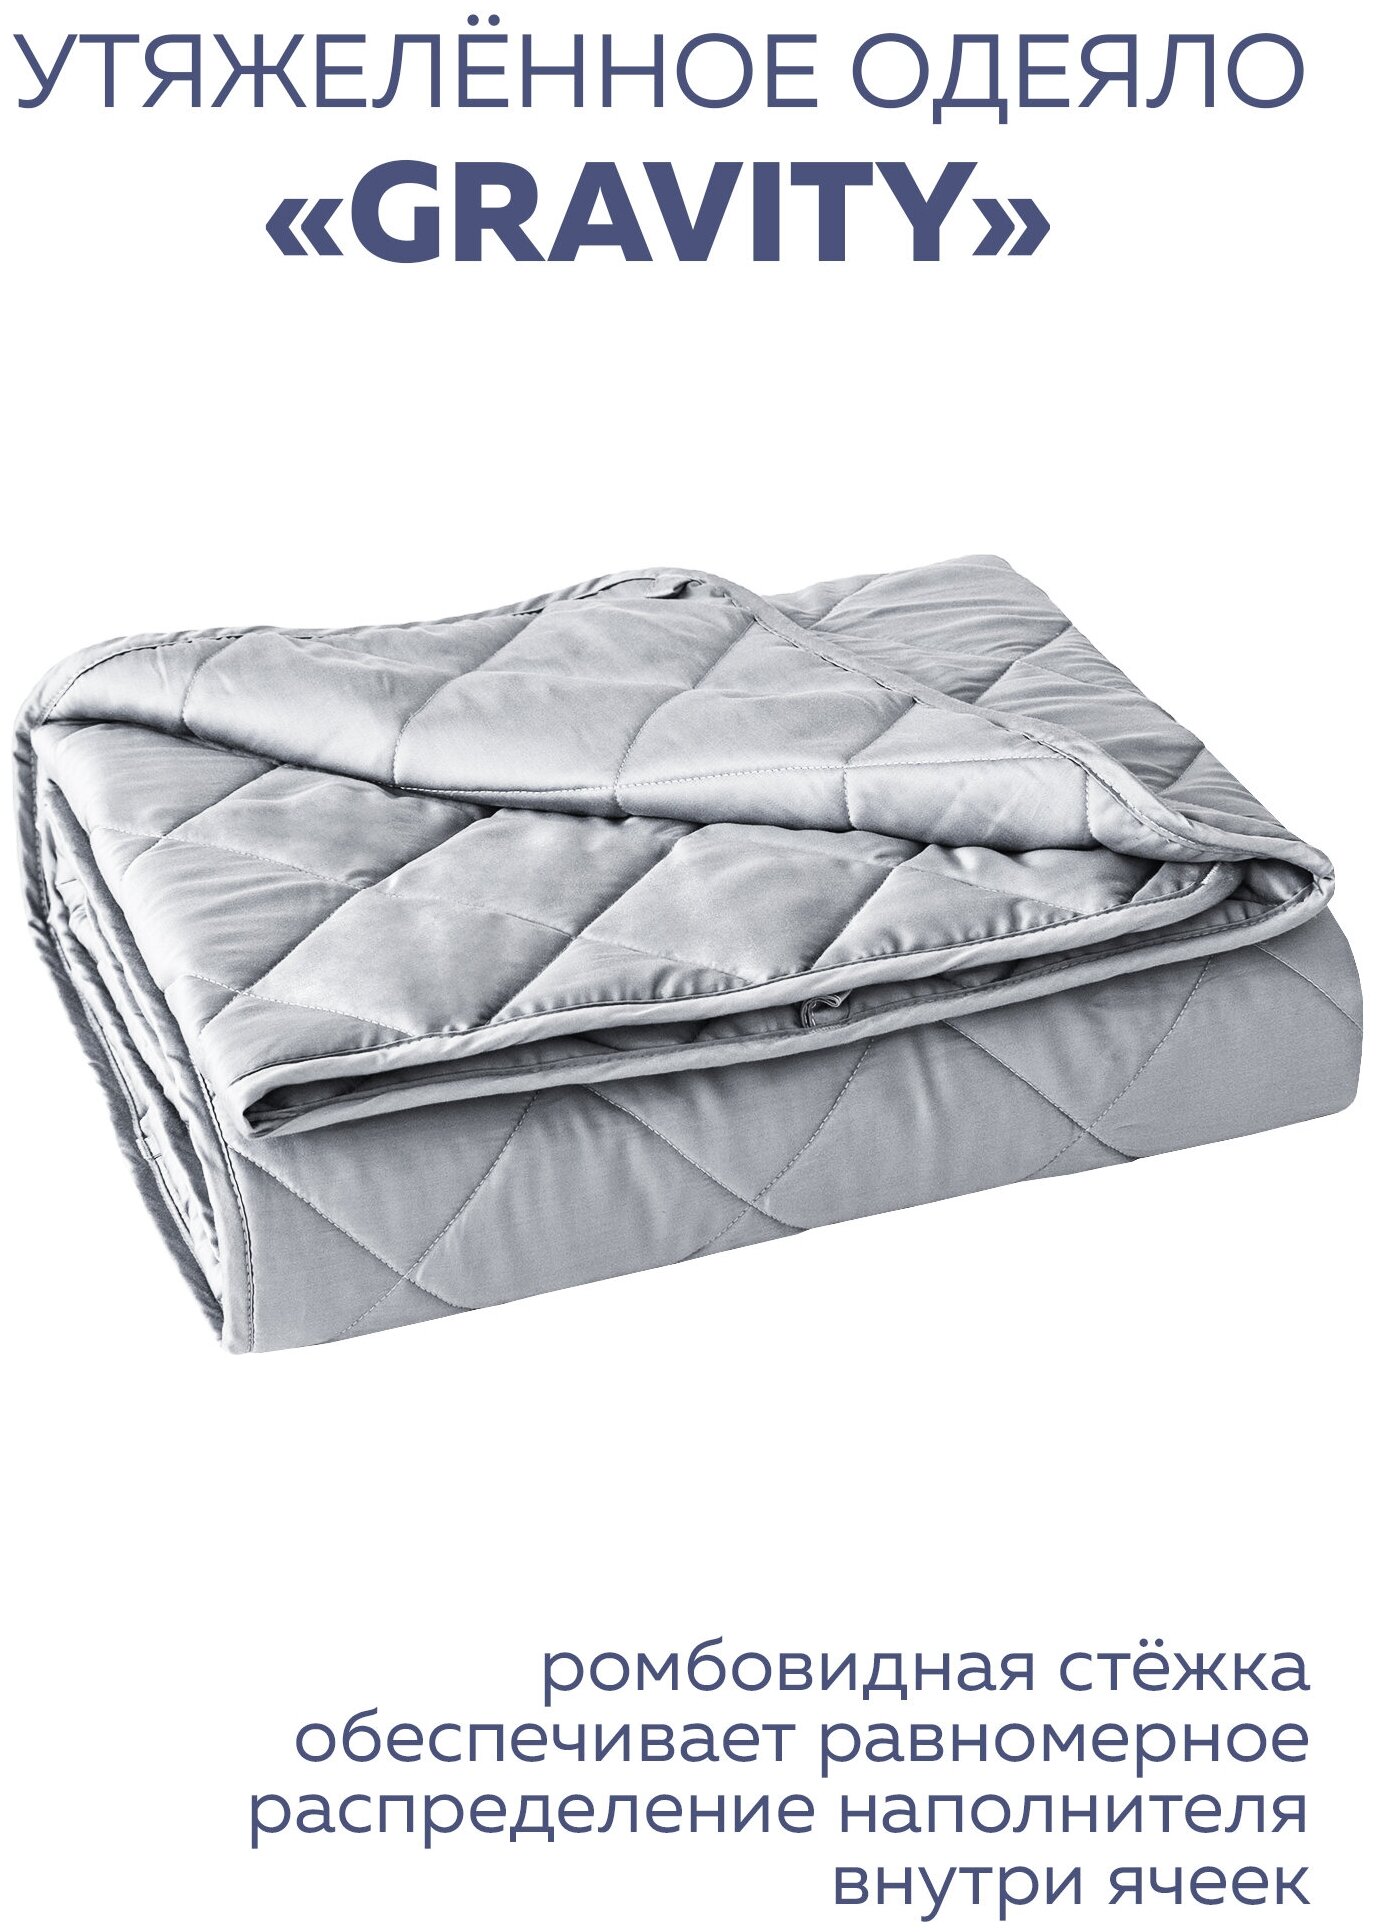 Утяжеленное одеяло Gravity (Гравити) Wellina, 172x205 см. серое 10 кг. / Сенсорное одеяло Gravity 172 x 205 см. 10 кг. (цвет серый)/ Тяжелое одеяло - фотография № 17